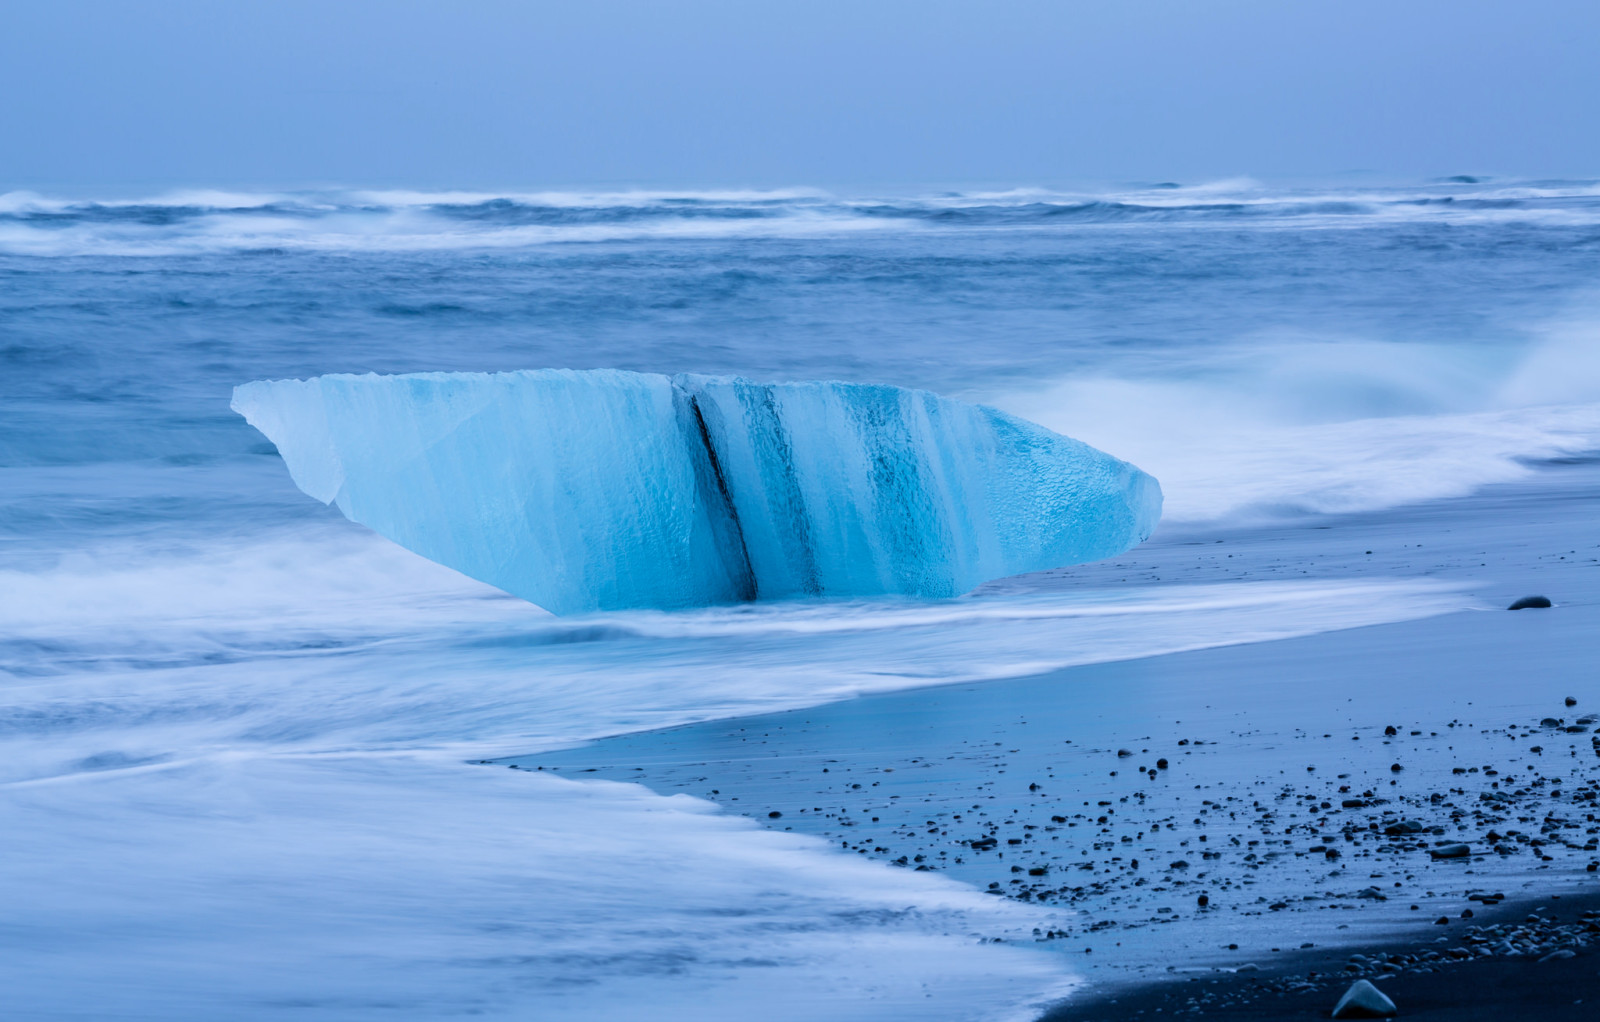 冰, 岸, 海, 波, 风暴, 冰岛, 絮状, 块